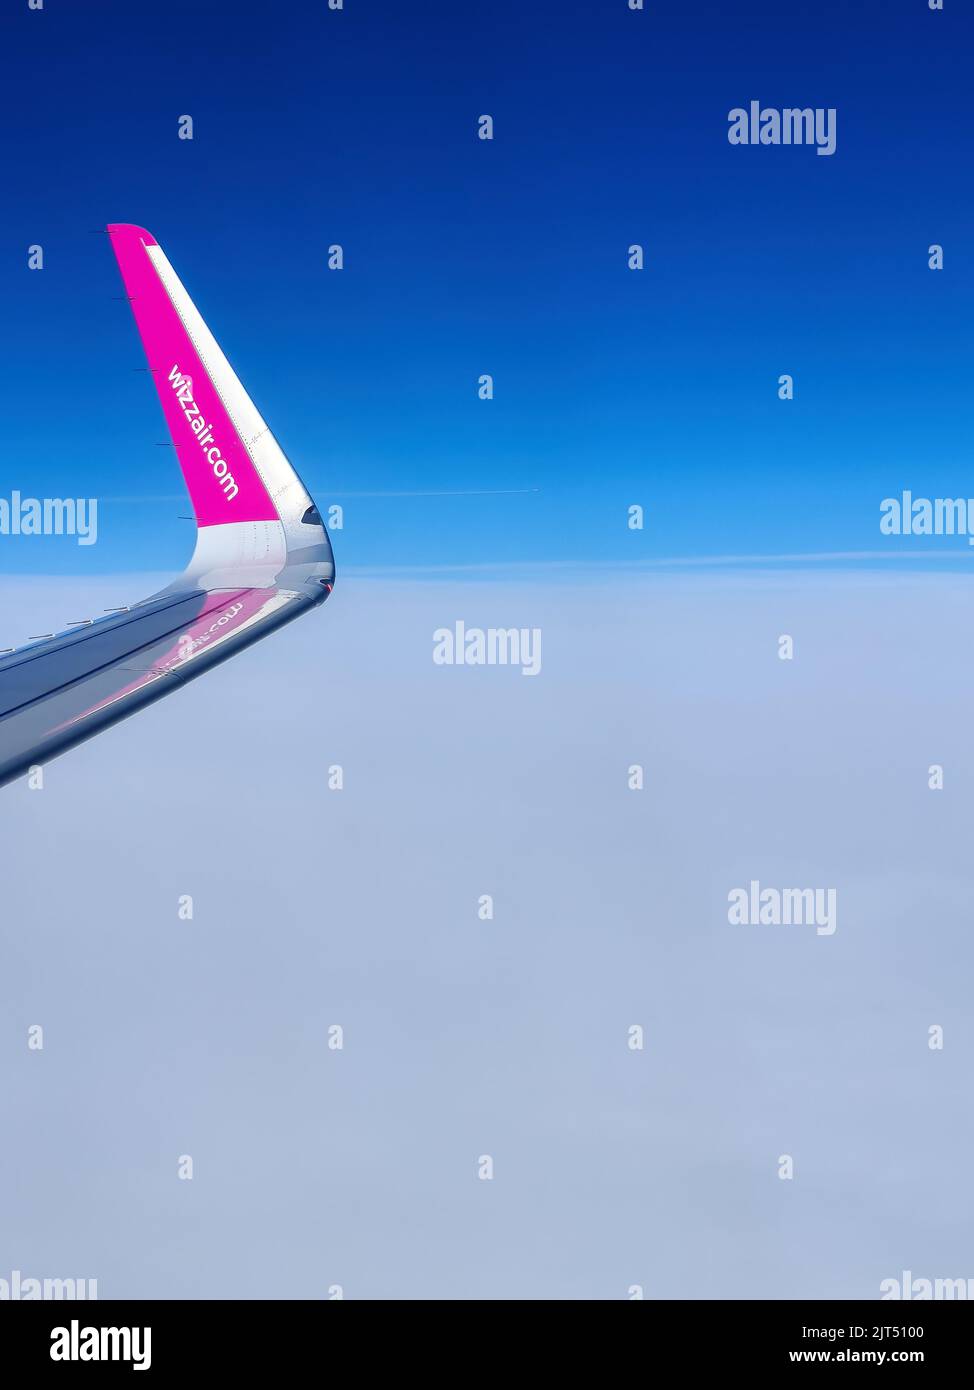 Malmö, Schweden - 22. August 2022: Linker Flügel des WizzAir-Flugzeugs nach dem Start über dem Flughafen Malmo Sturup in Richtung Belgrad, Serbien Stockfoto